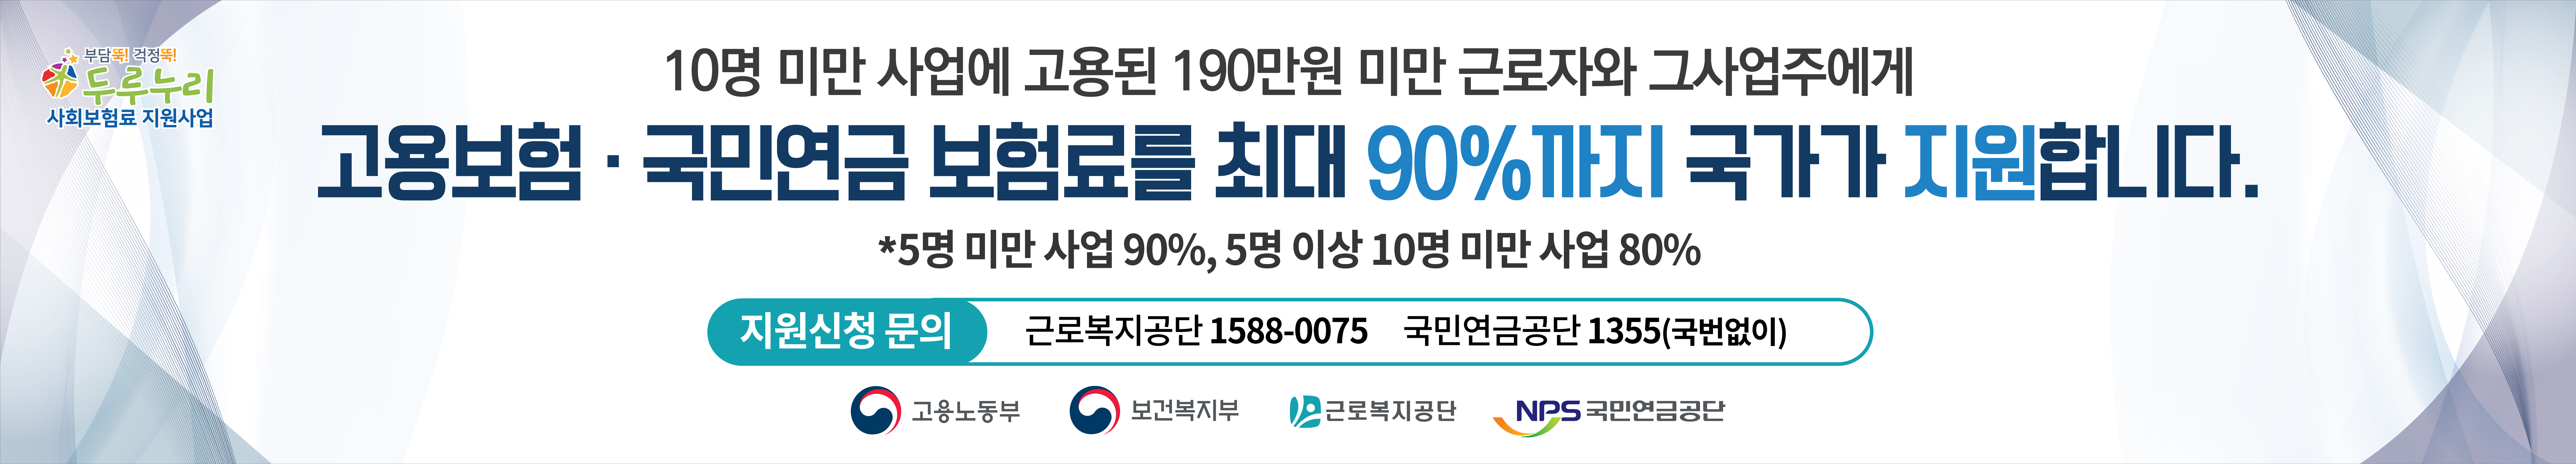 두루누리 사회보험료 지원사업 홍보 현수막 (2)